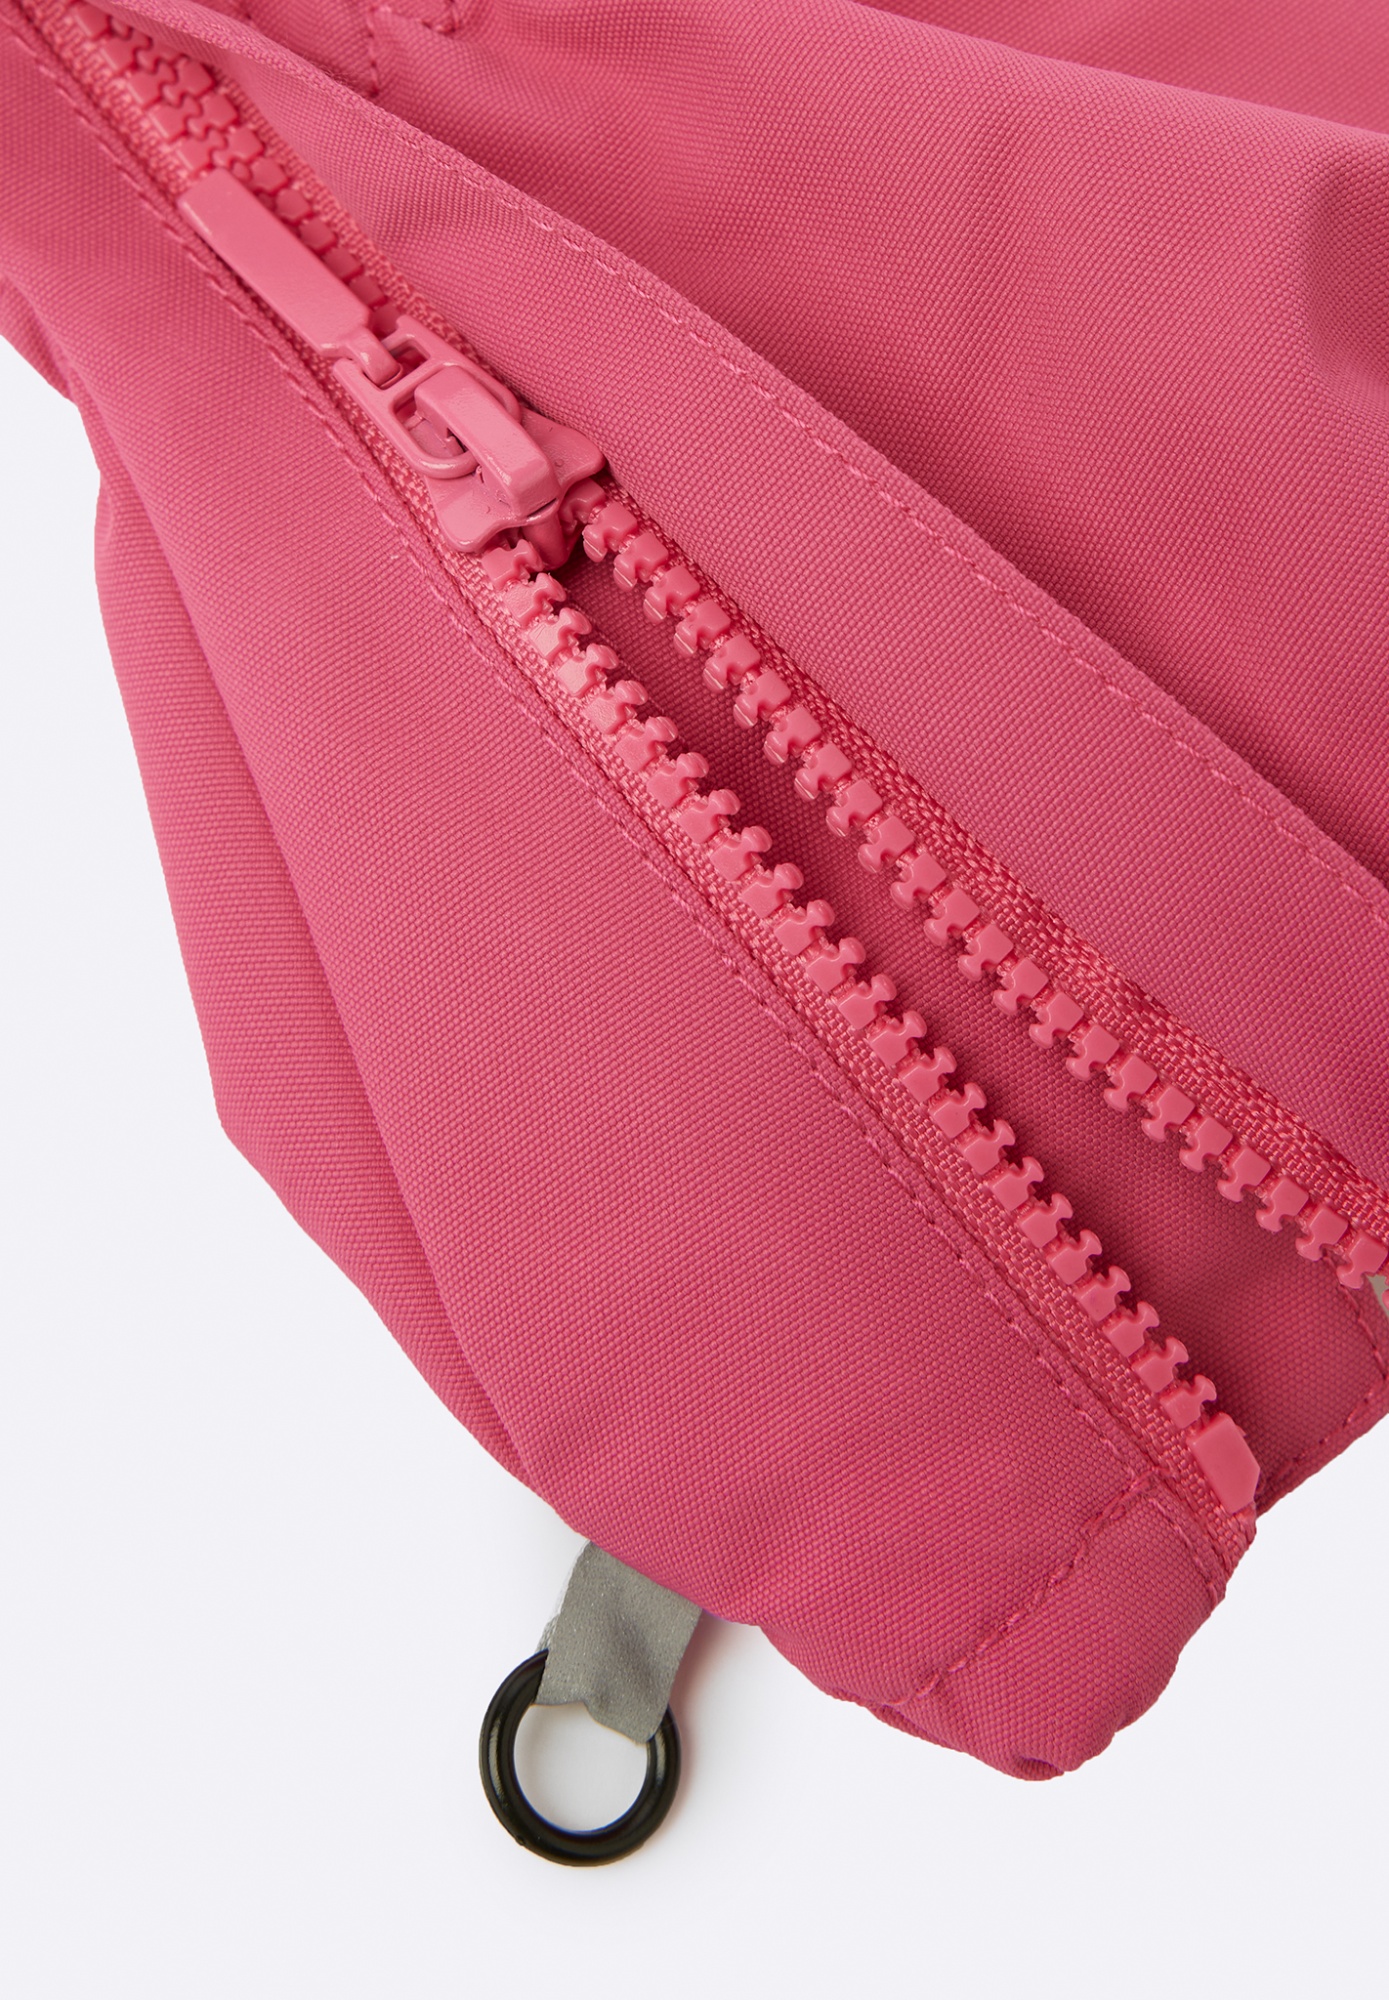 Детские варежки текстильные Lassie Odri Розовые | фото